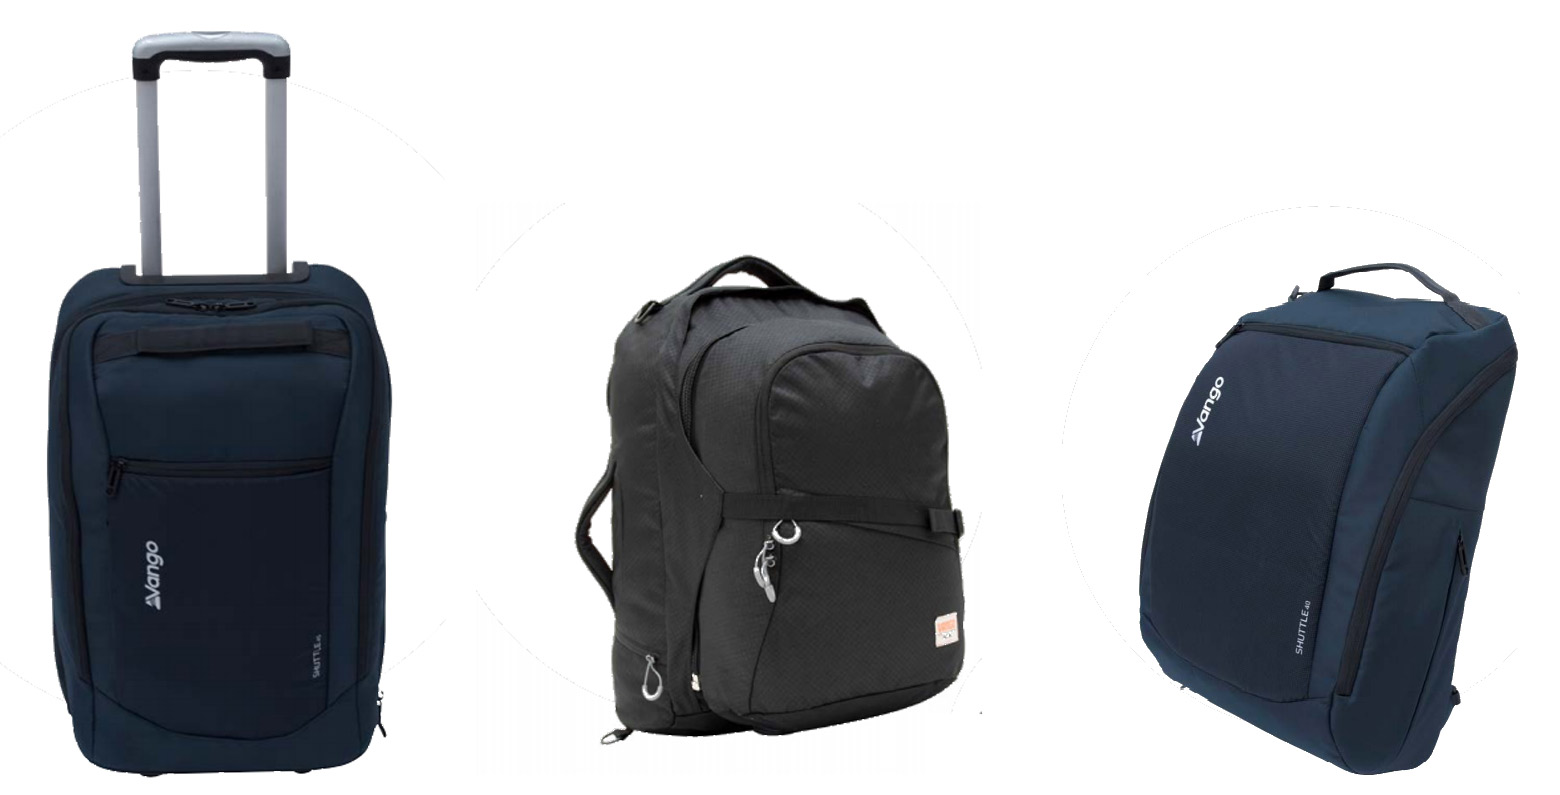 Vango Luggage & Backpacks